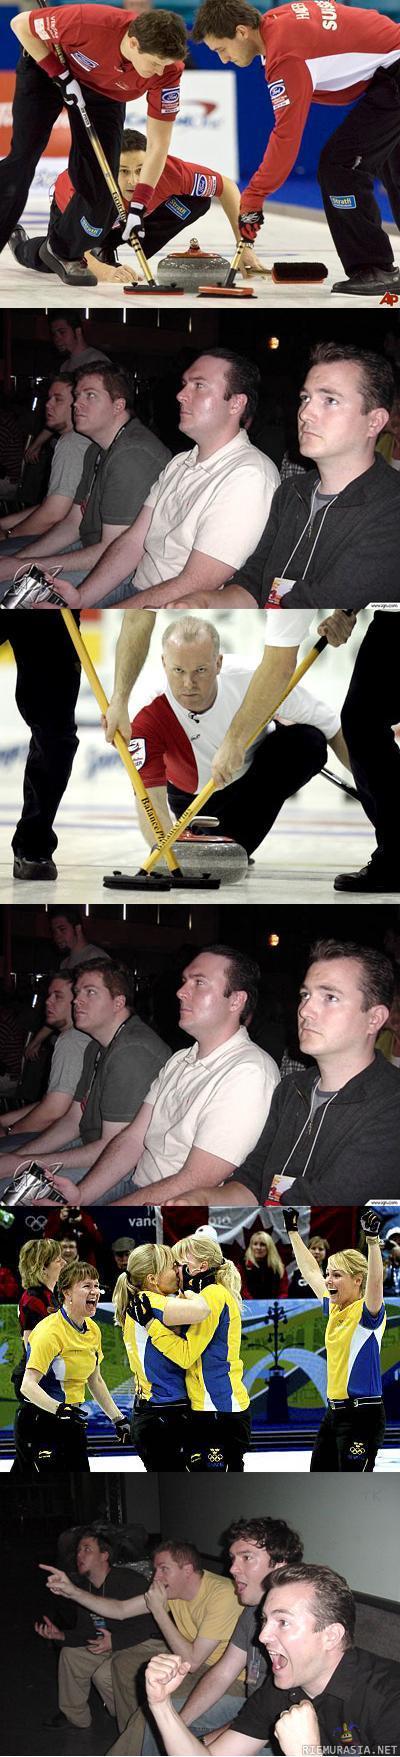 curling on paras olympialaji - tutut kaverukset taas vauhdissa